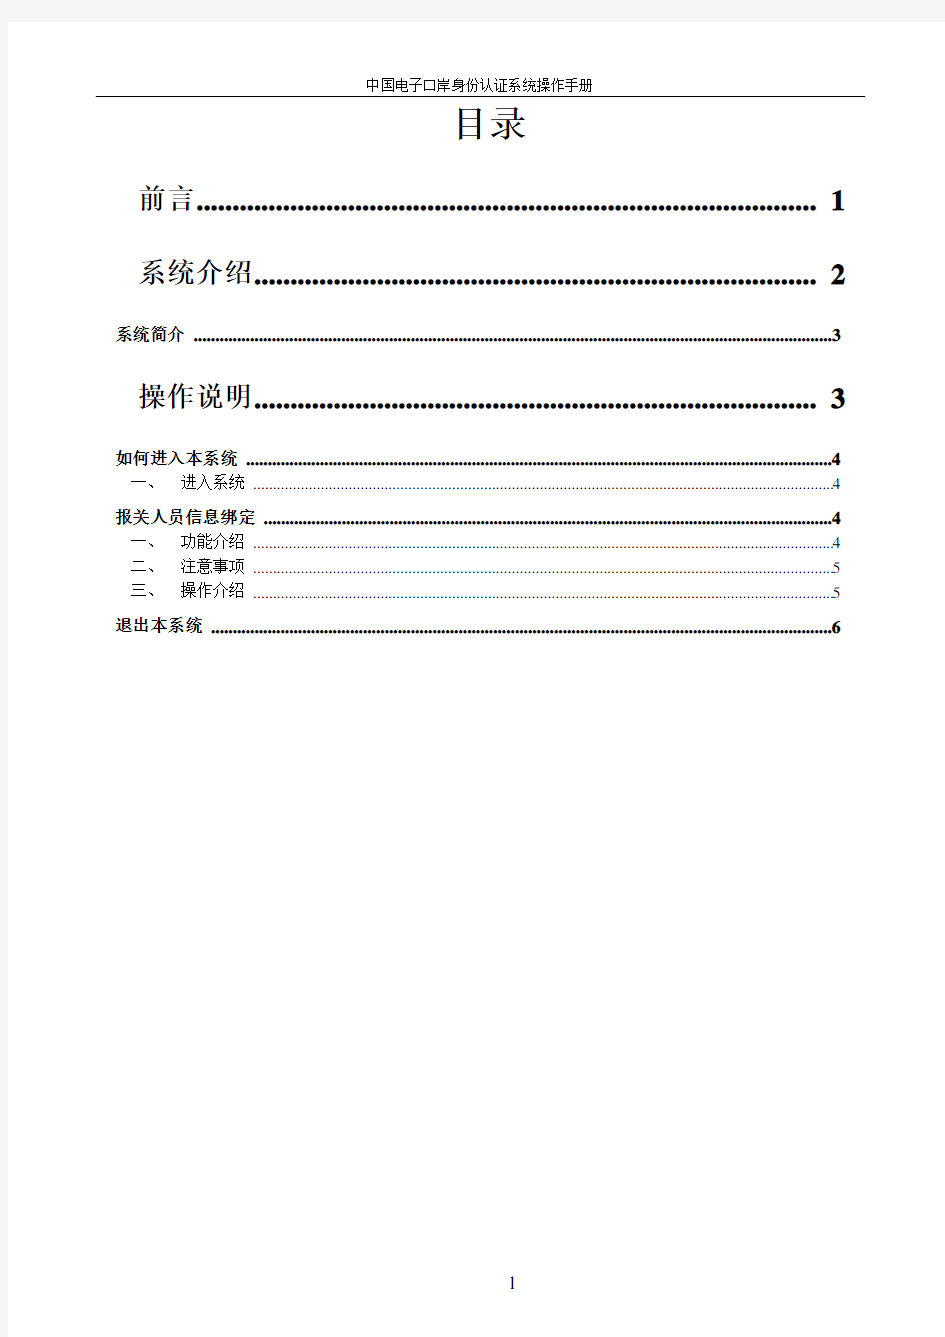 中国电子口岸身份认证系统